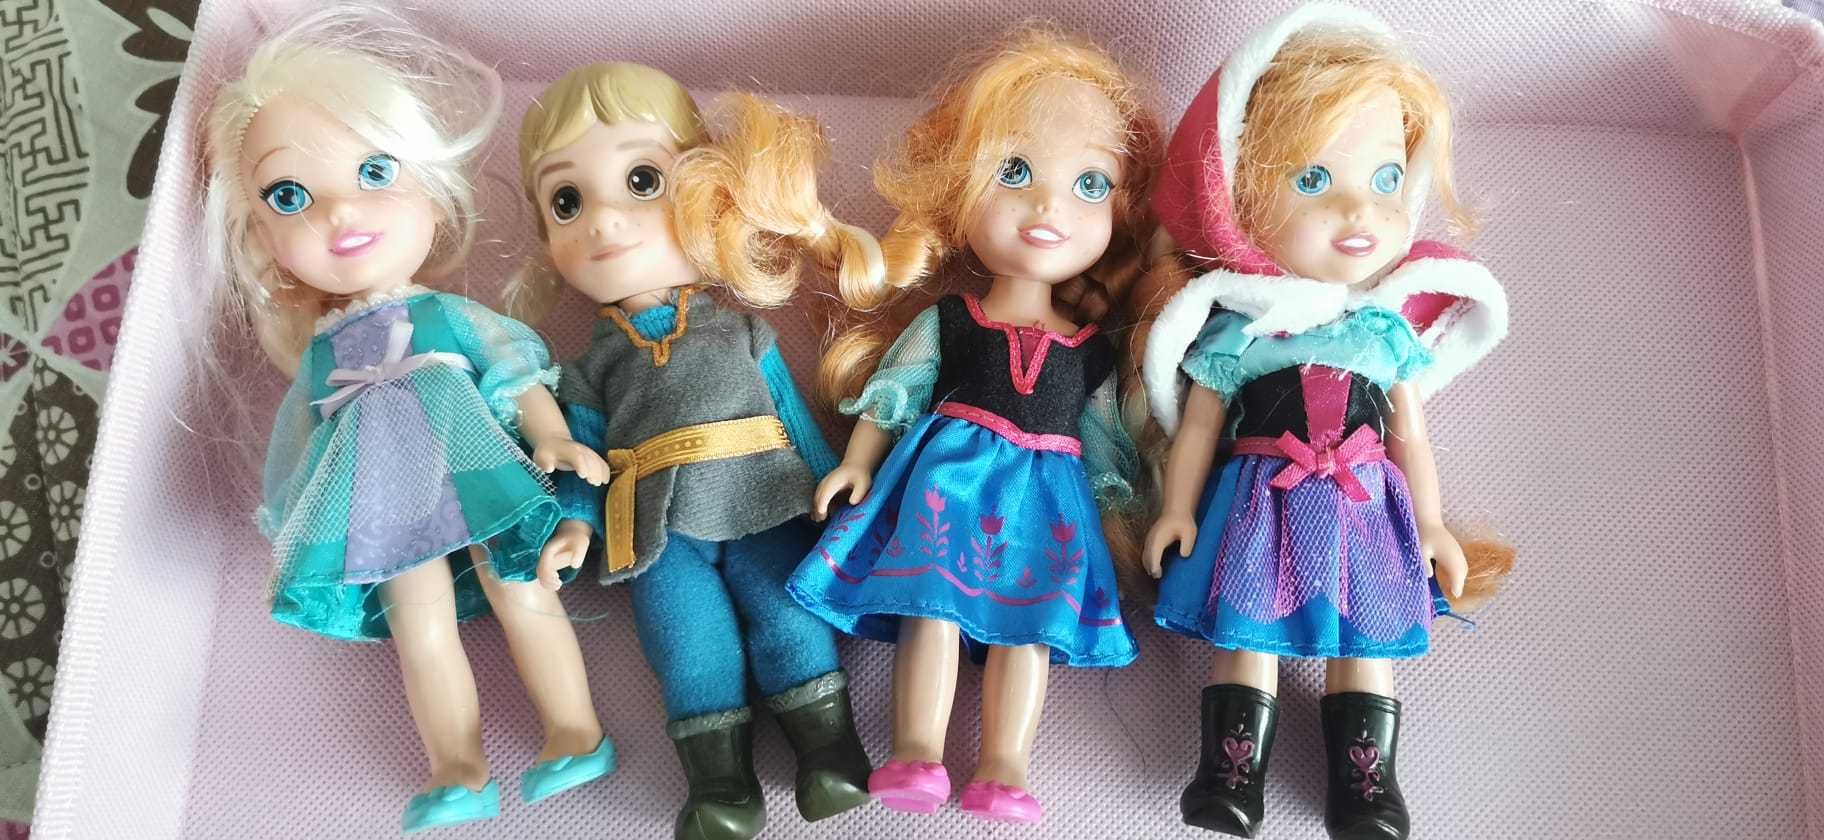 Regatul de gheata - set 6 figurine Frozen + papusa Elsa